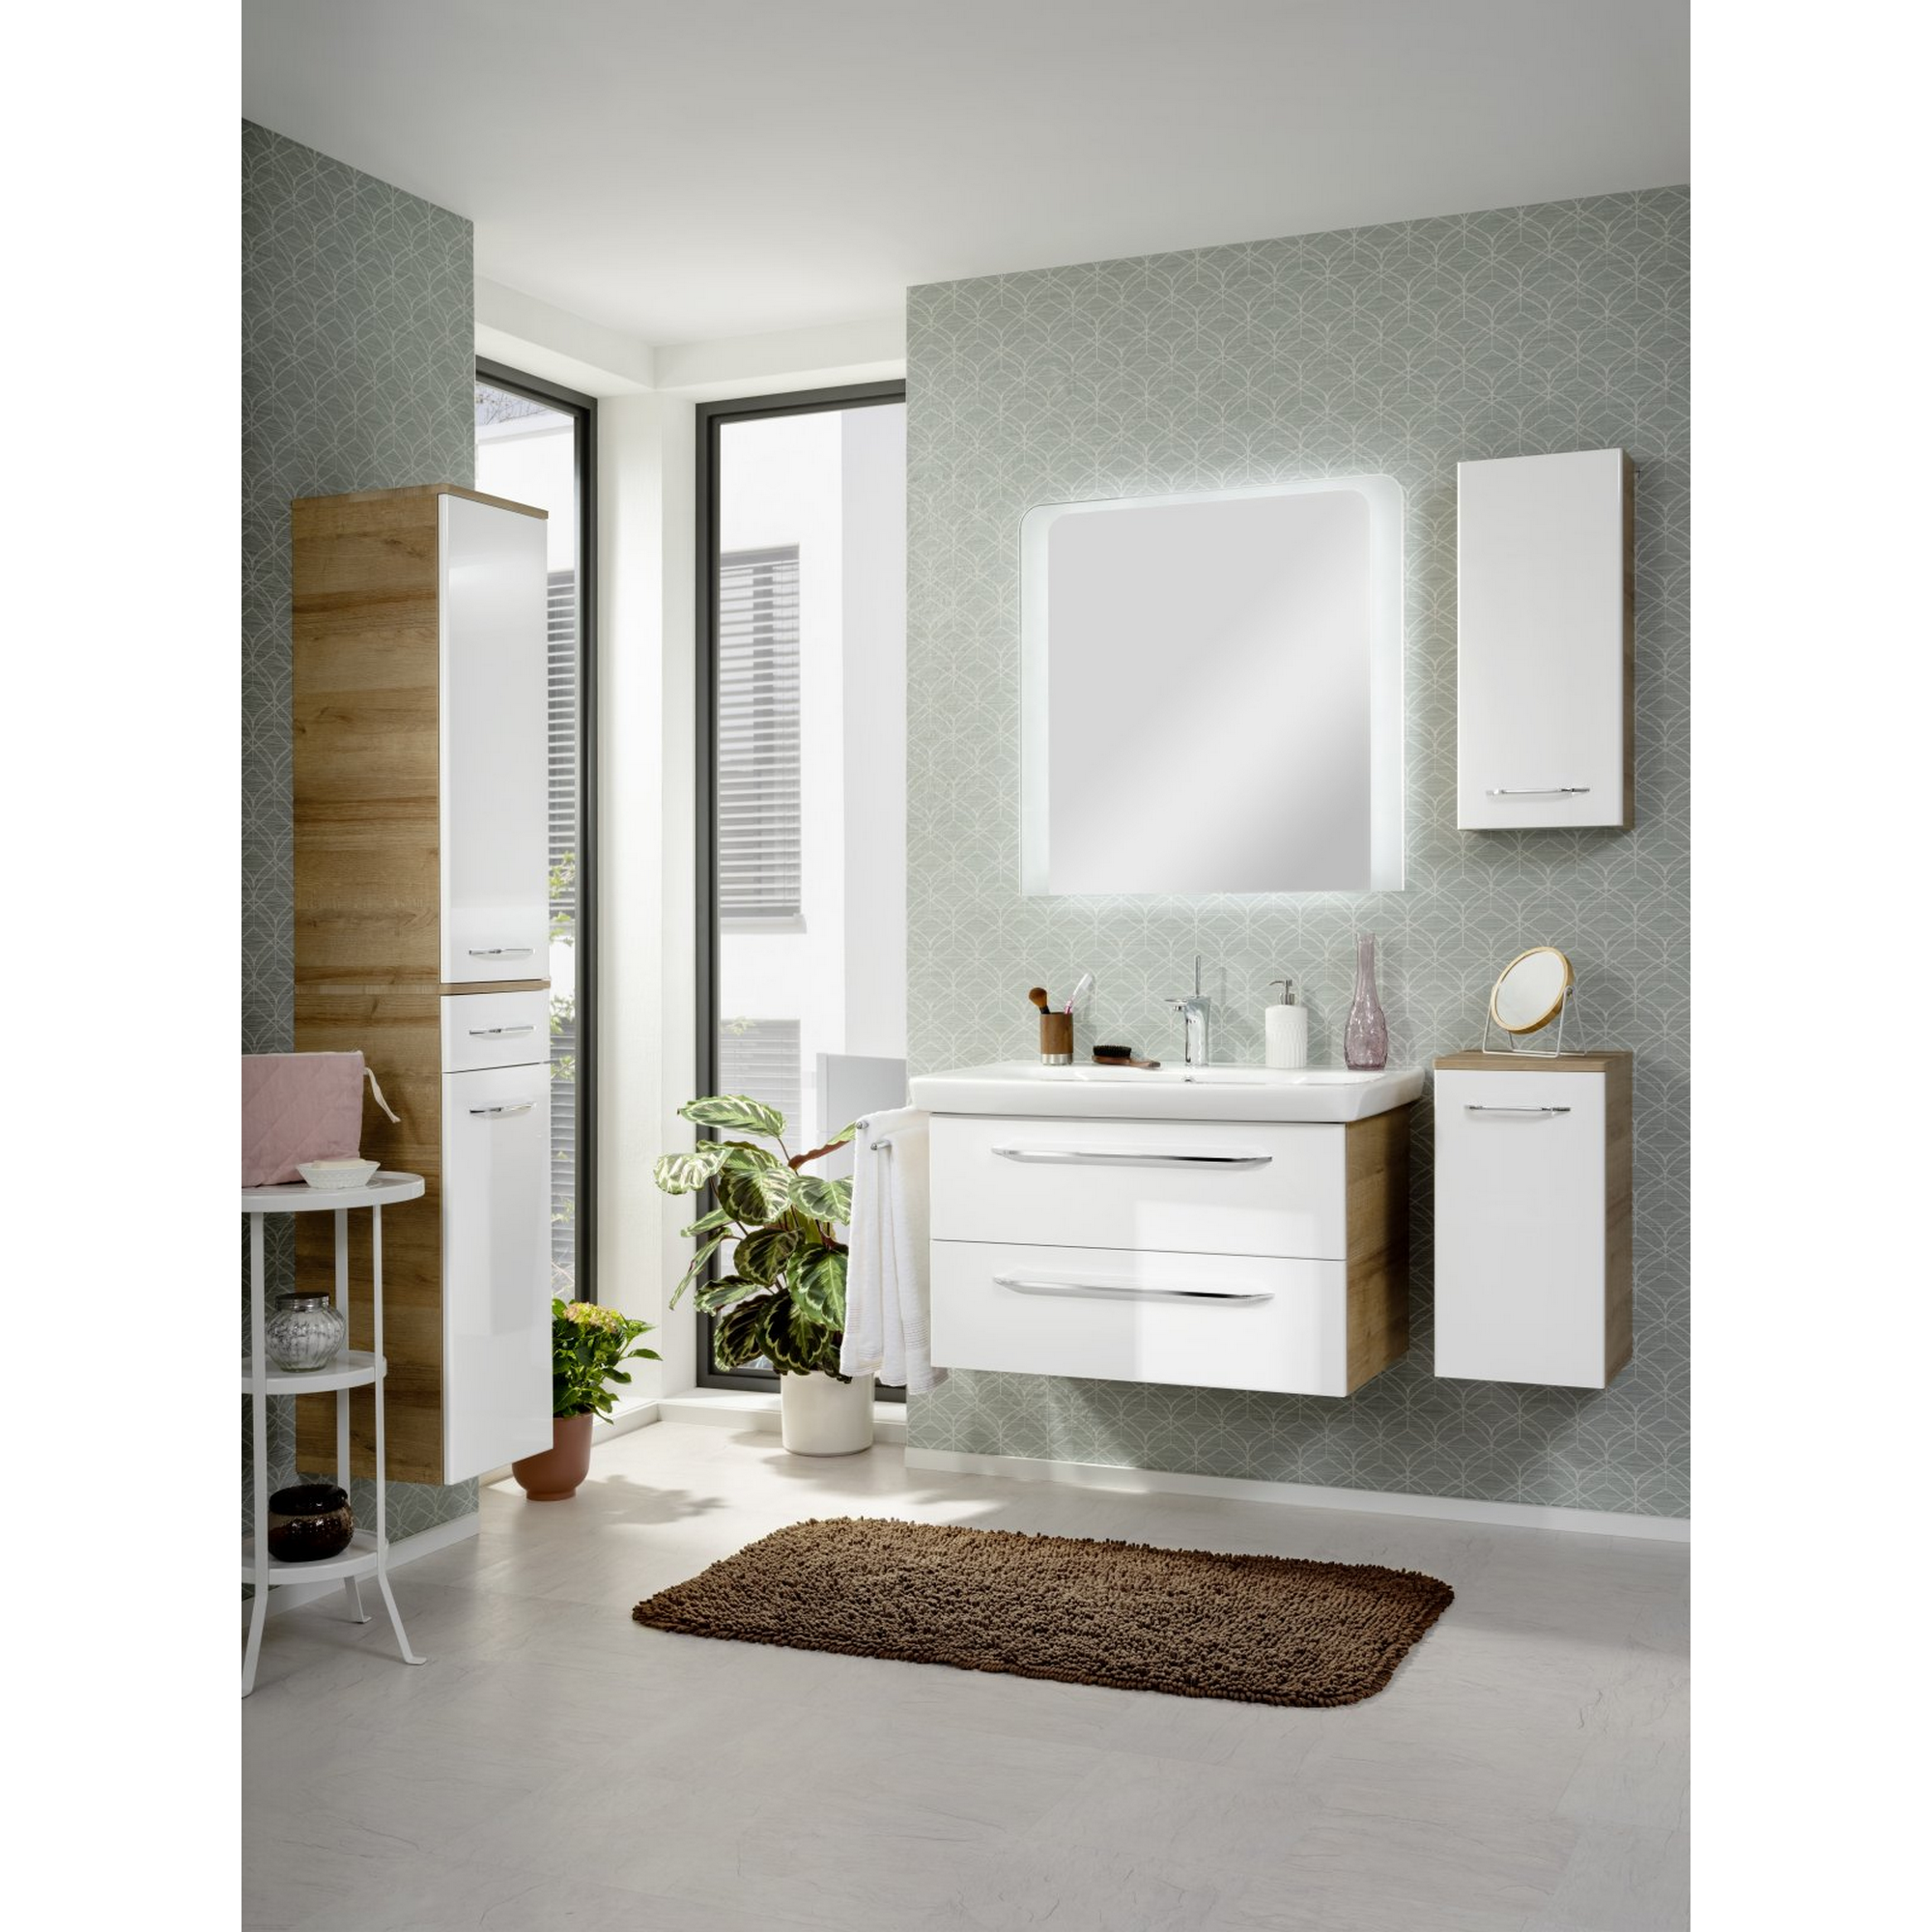 Hängeschrank 'Milano' asteiche/weiß 30 x 68 x 15,5 cm + product picture